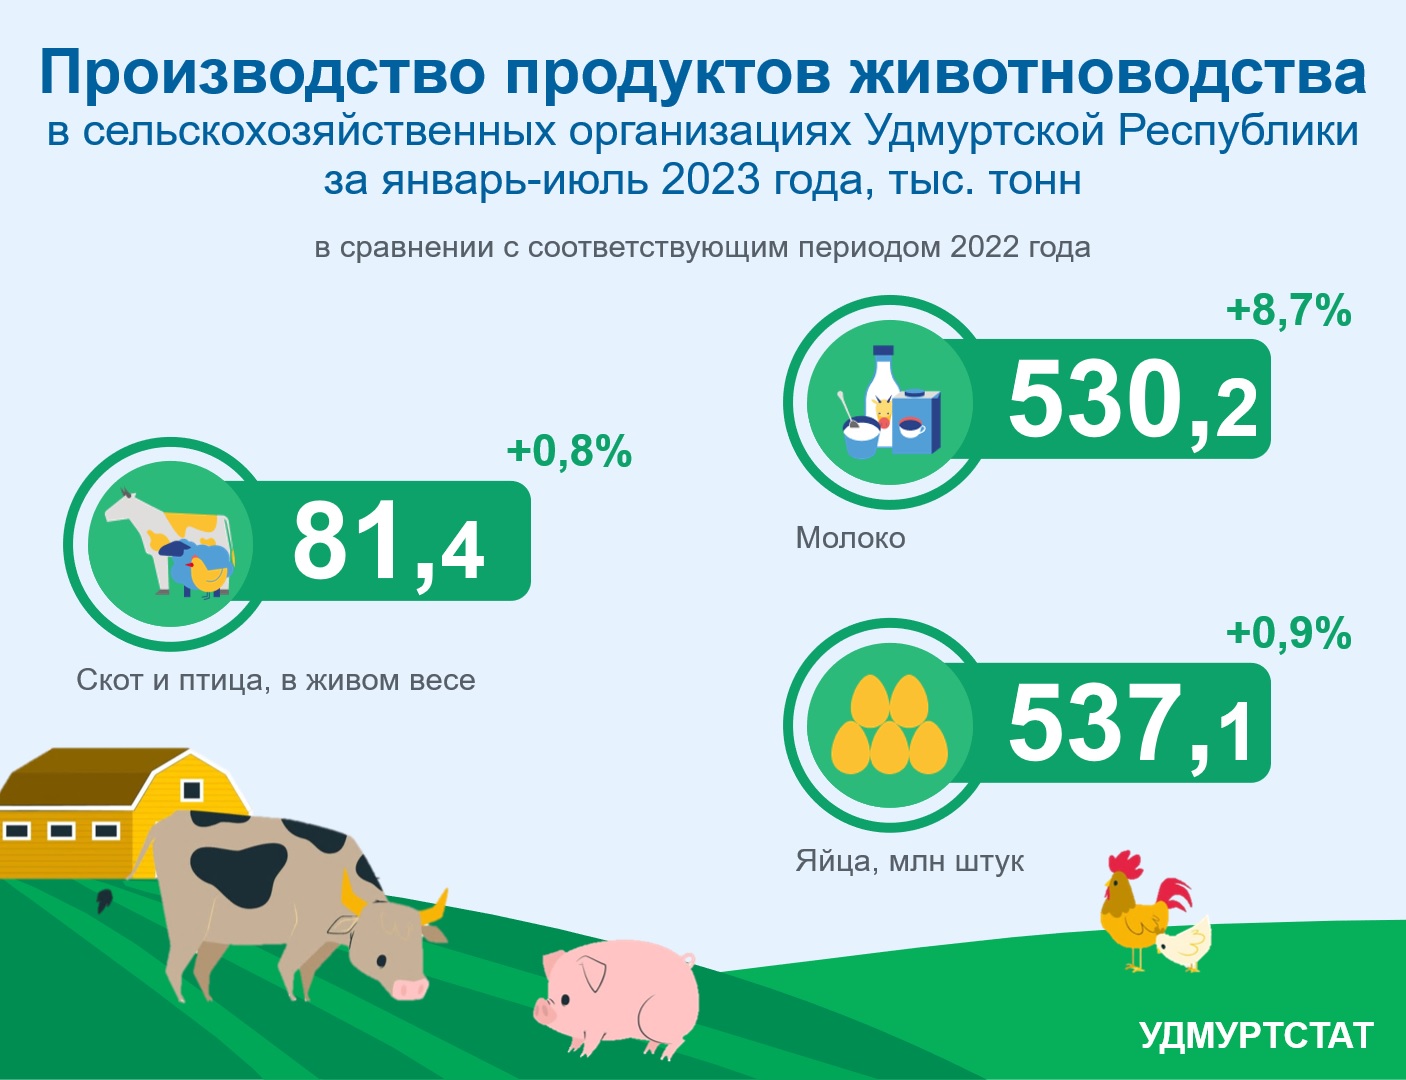 Производство продуктов животноводства за январь-июль 2023 года.